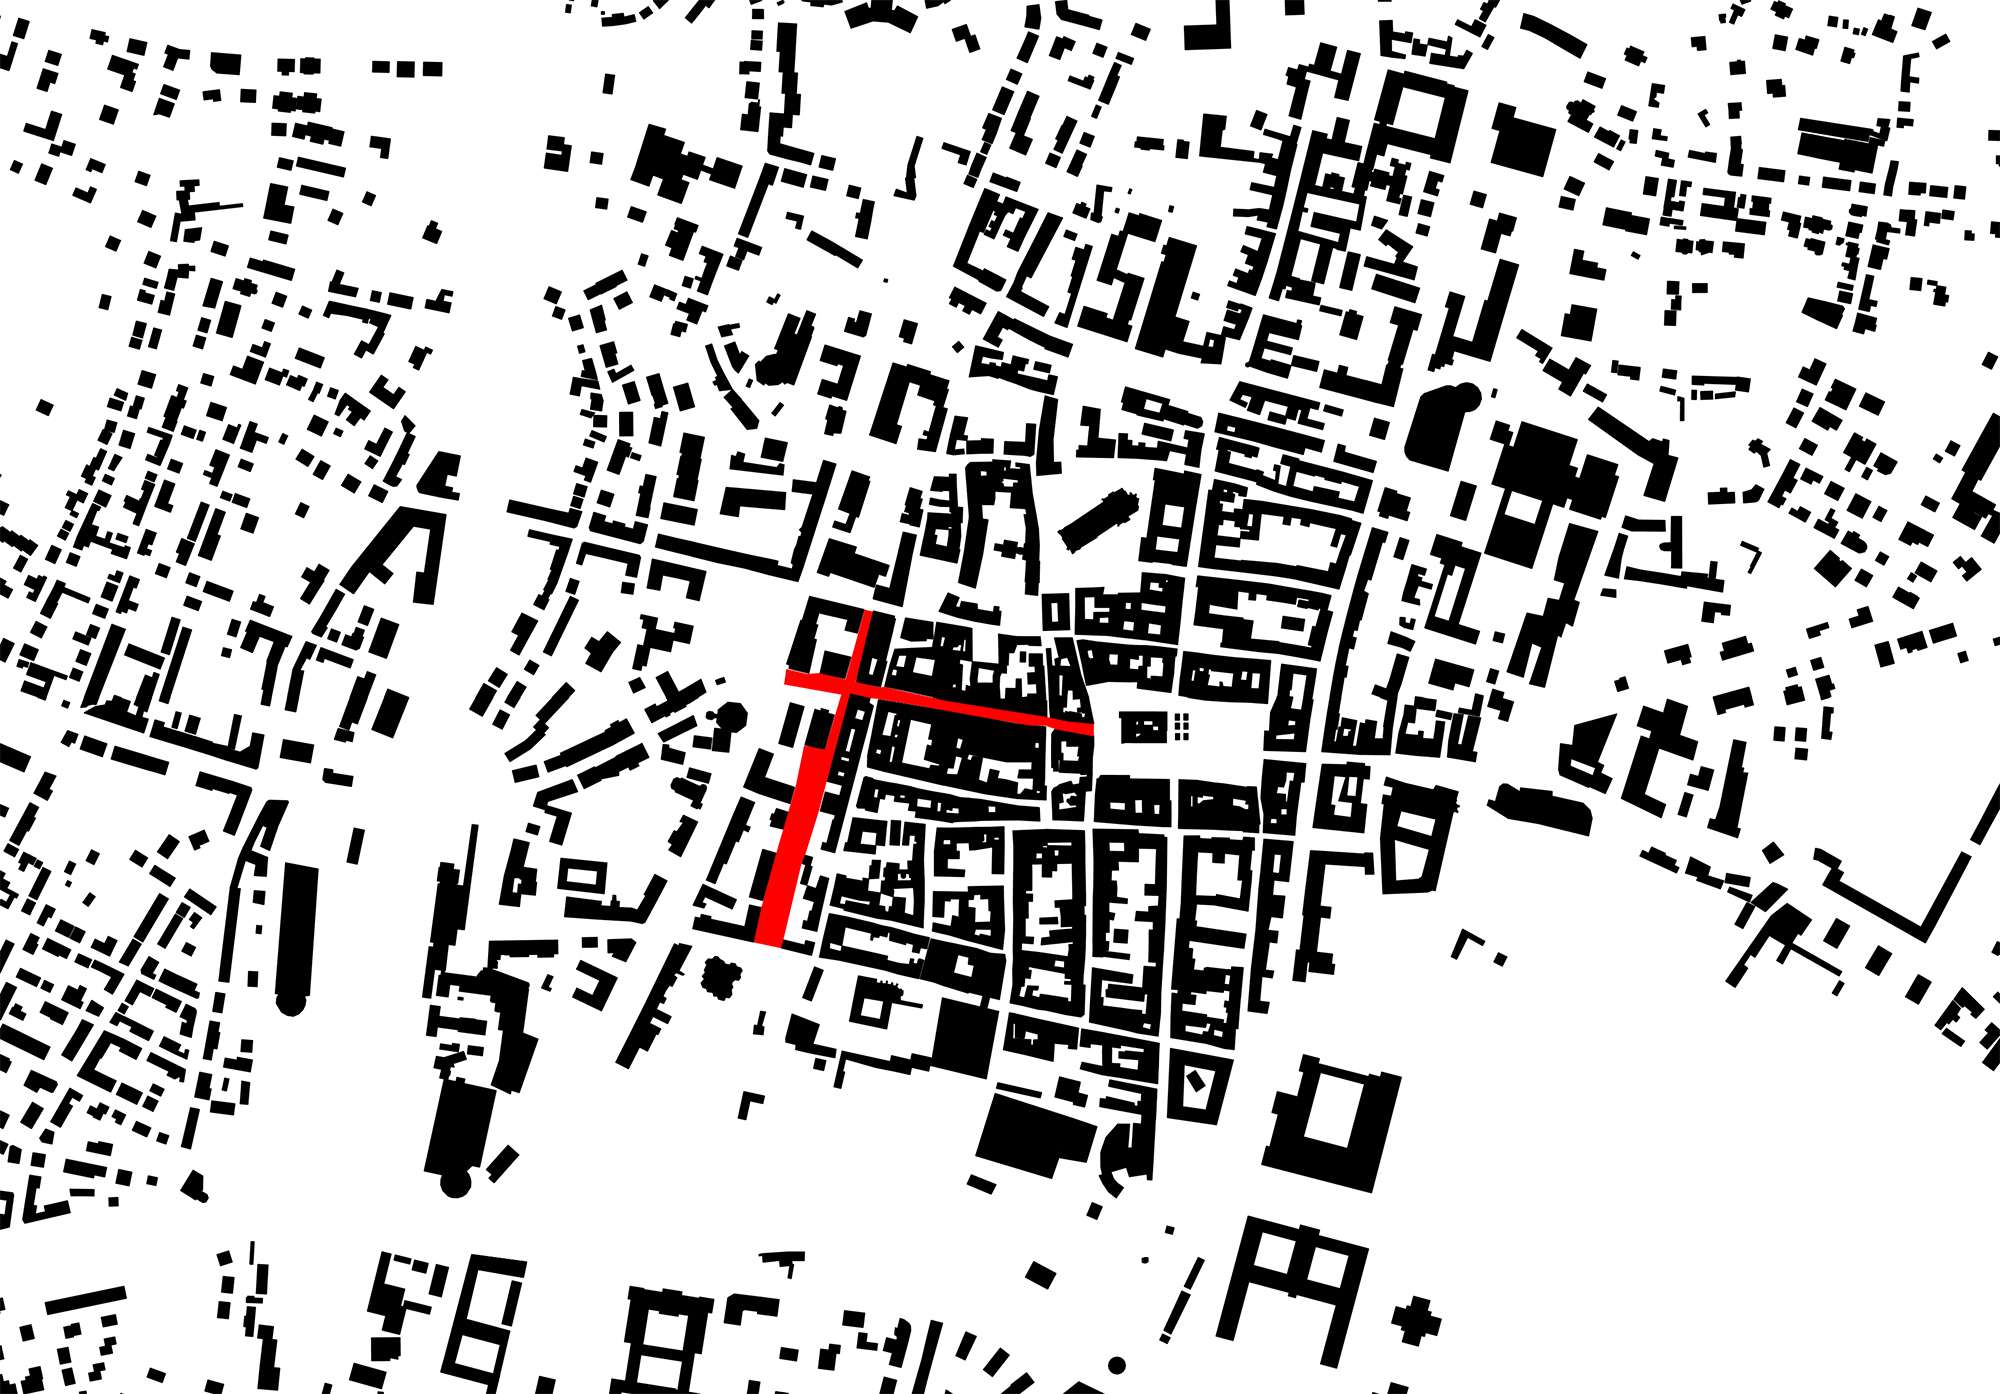 fuzo_wiener_neustadt_blackmap-1_10000_gabu_heindl_architektur.jpg